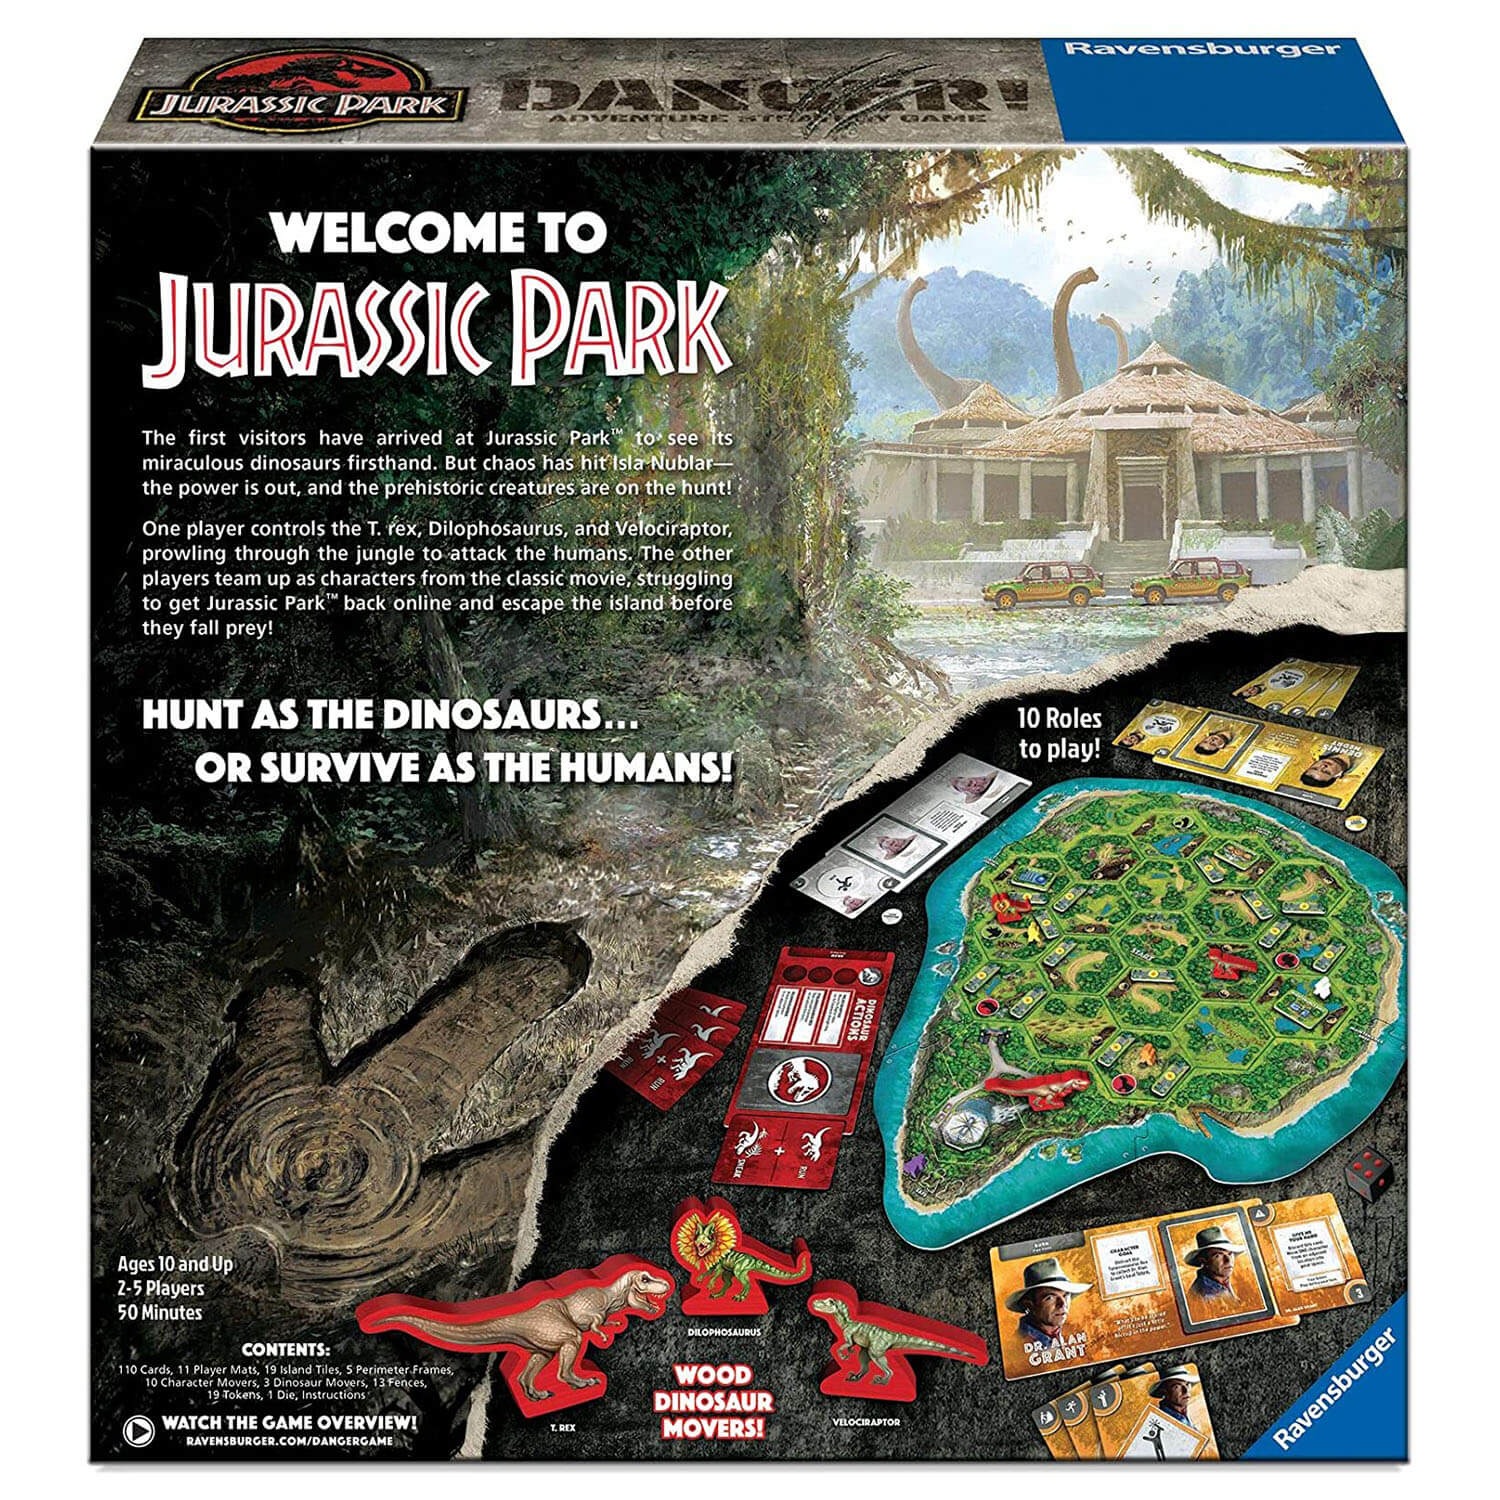 Ravensburger Jurassic Park Danger! Game